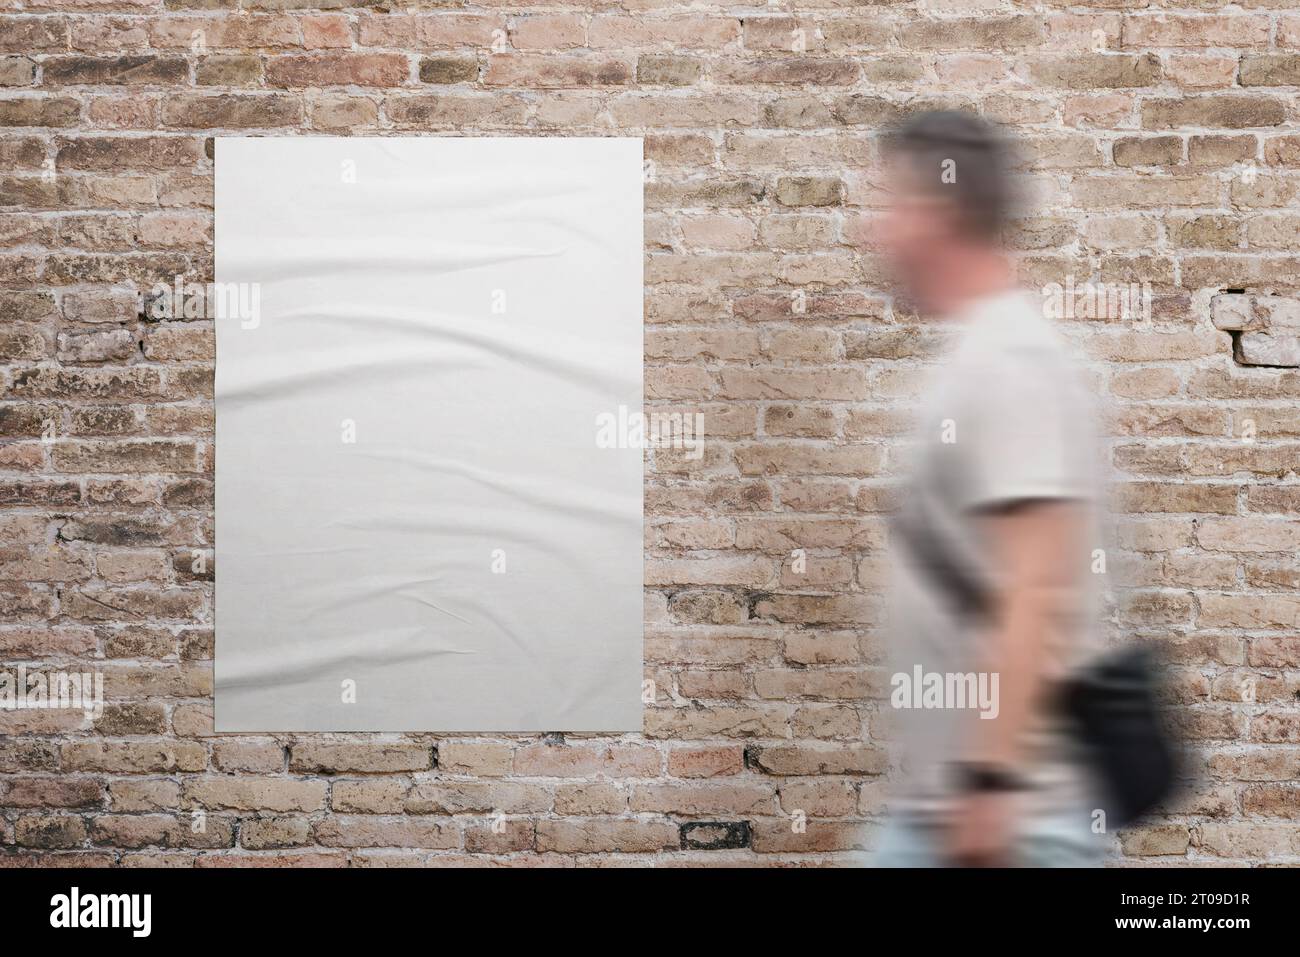 Faltiges, leeres A3-Poster in weiß, an einer Ziegelwand befestigt. Ein Mann geht nebenan. Werbeaktion für das Design von Werbe- oder Marketingkampagnen Stockfoto